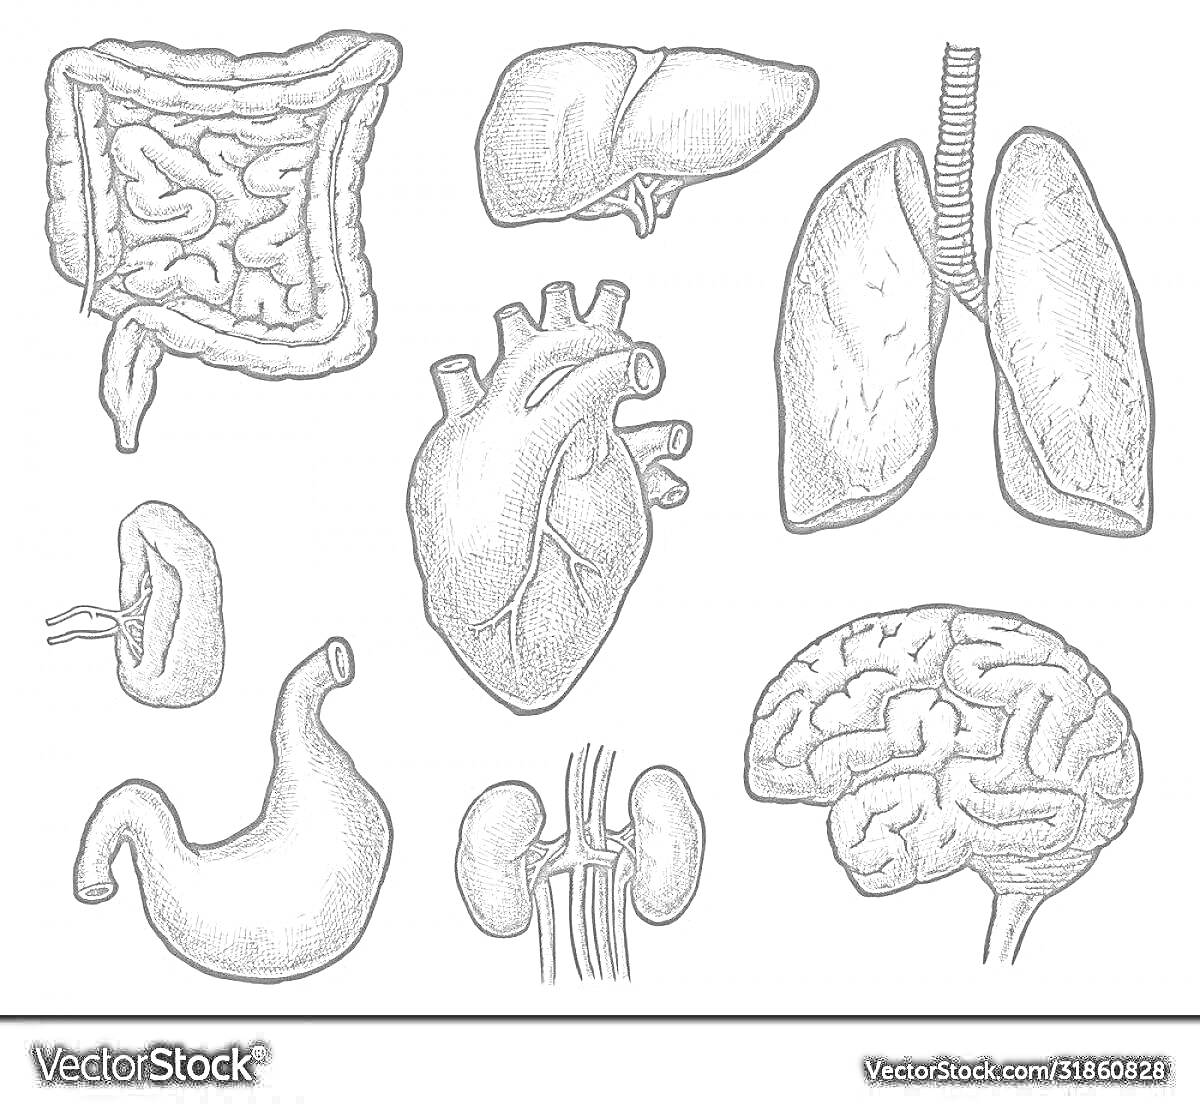 Раскраска Внутренние органы человека — мозг, сердце, легкие, печень, желудок, кишечник, почки